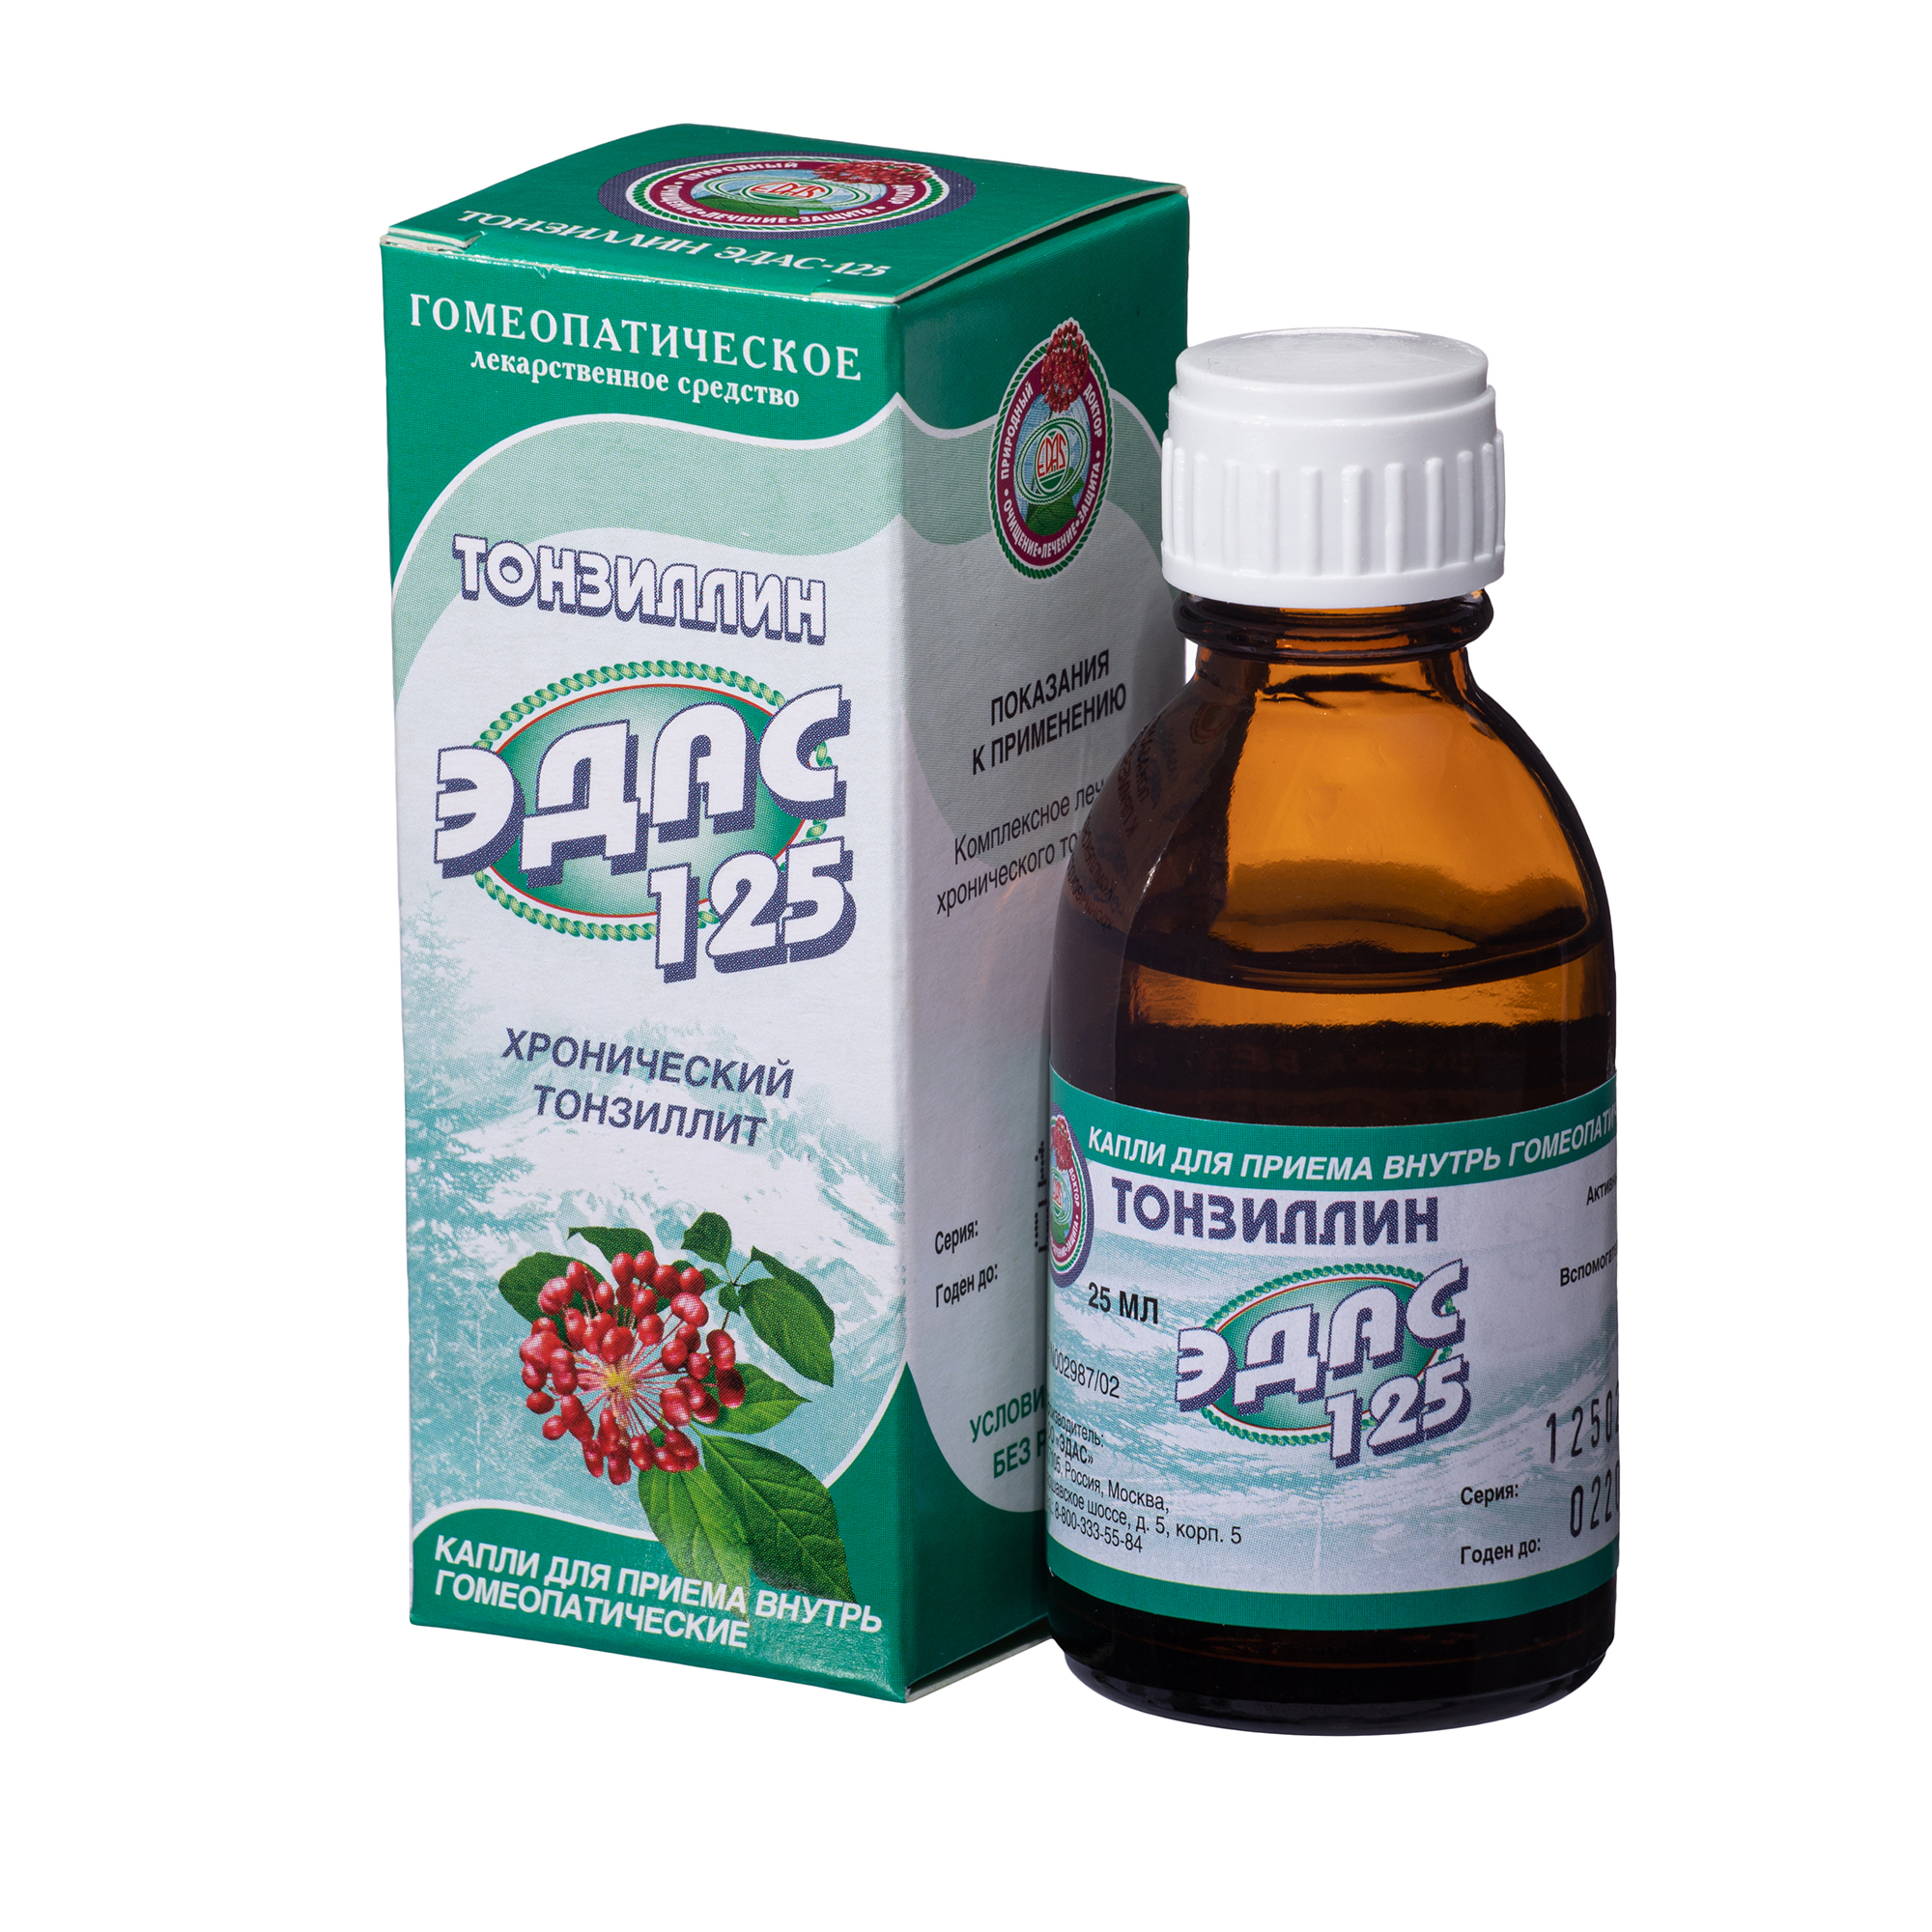 Тонзиллин Эдас-125, для лечения хронического тонзиллита, капли гом. 25 мл бандитский петербург том 1 константинов а